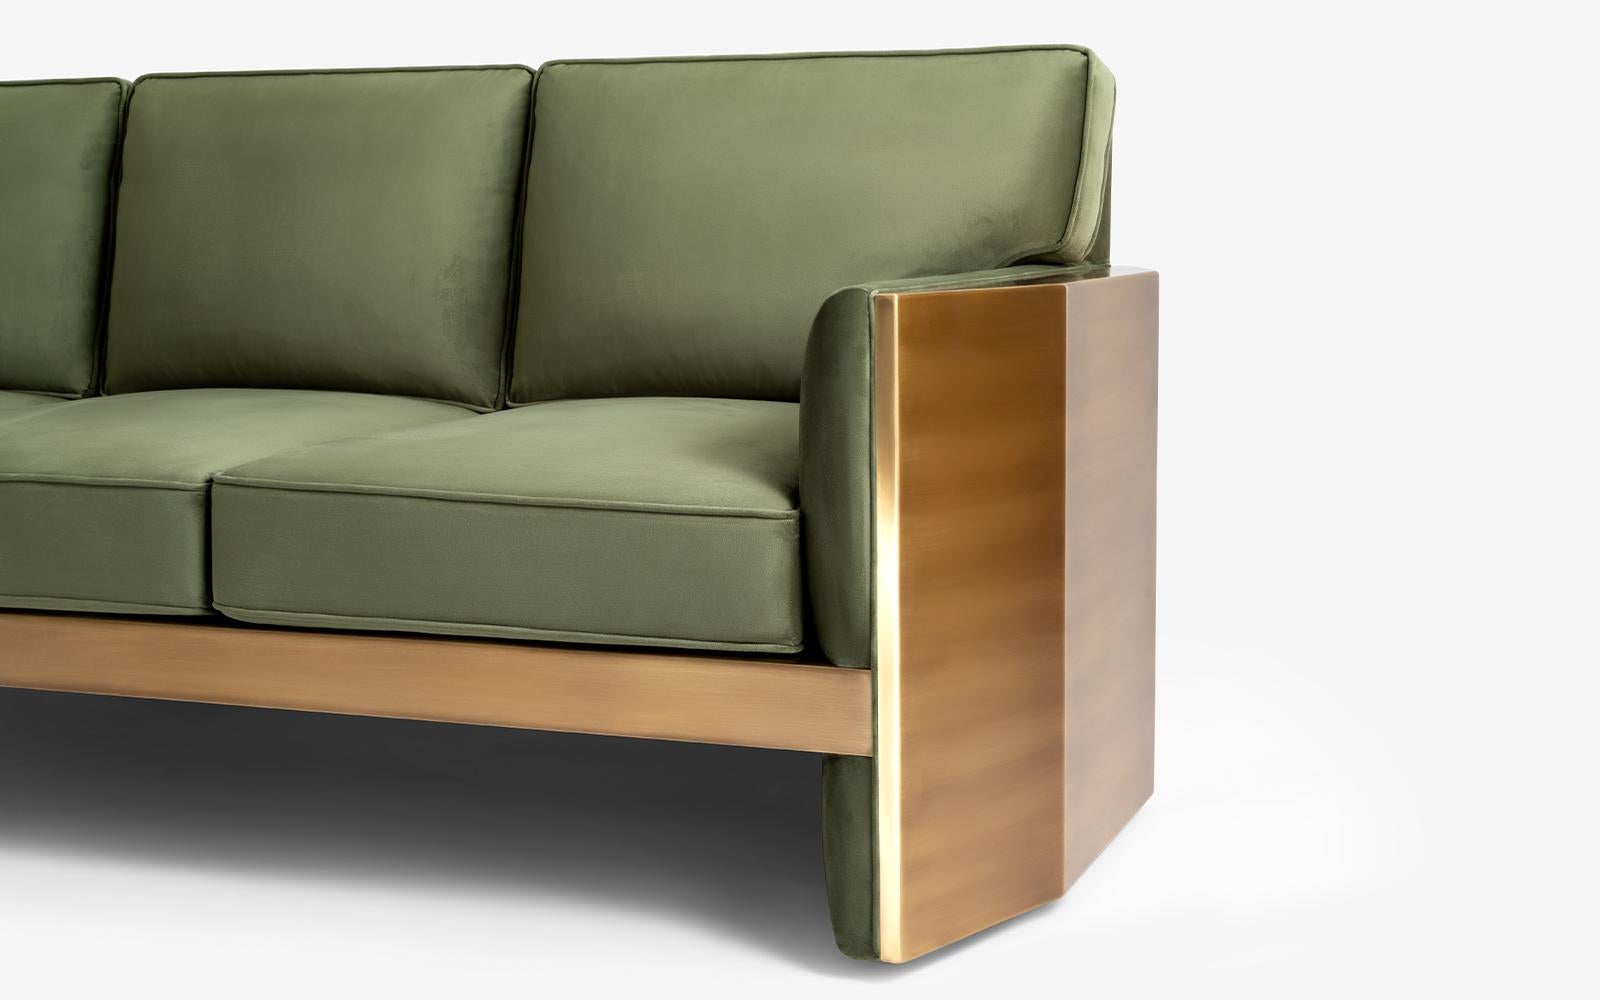 Das berühmte kühne Dreisitzer-Sofa kombiniert harmonisch Stoff mit Messing und verleiht Ihrem Raum einen Hauch von Qualität...
Materialien:
-Messing 
-Erste Klasse Erle
-Eiche massiv erster Güte
-Eingetragenes